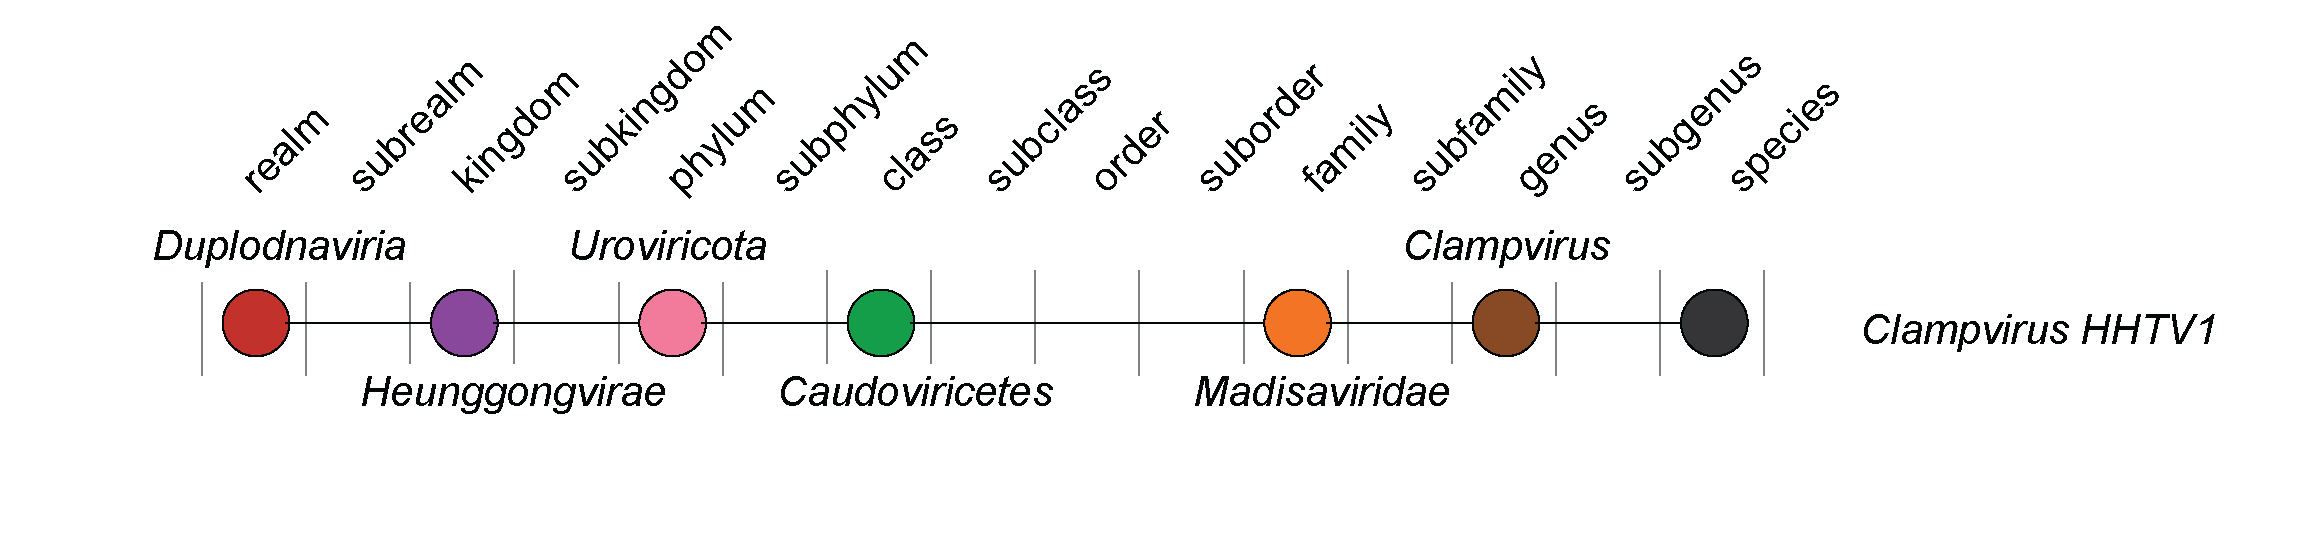 Madisaviridae taxonomy